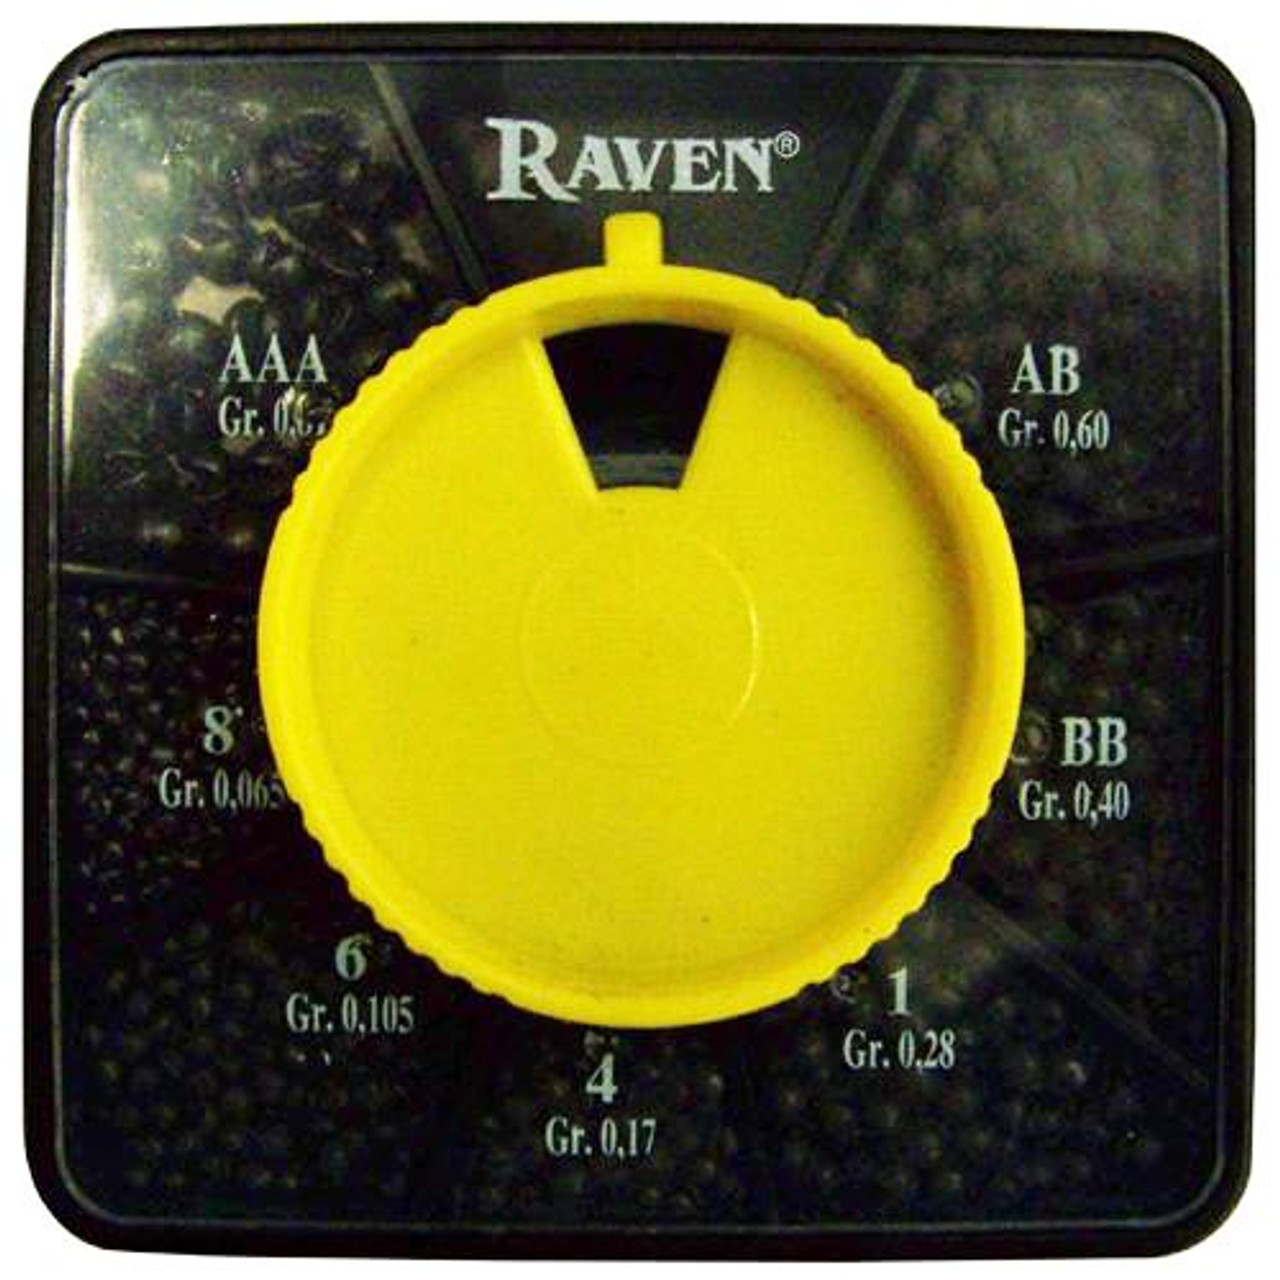 Raven Split Shot Dispenser